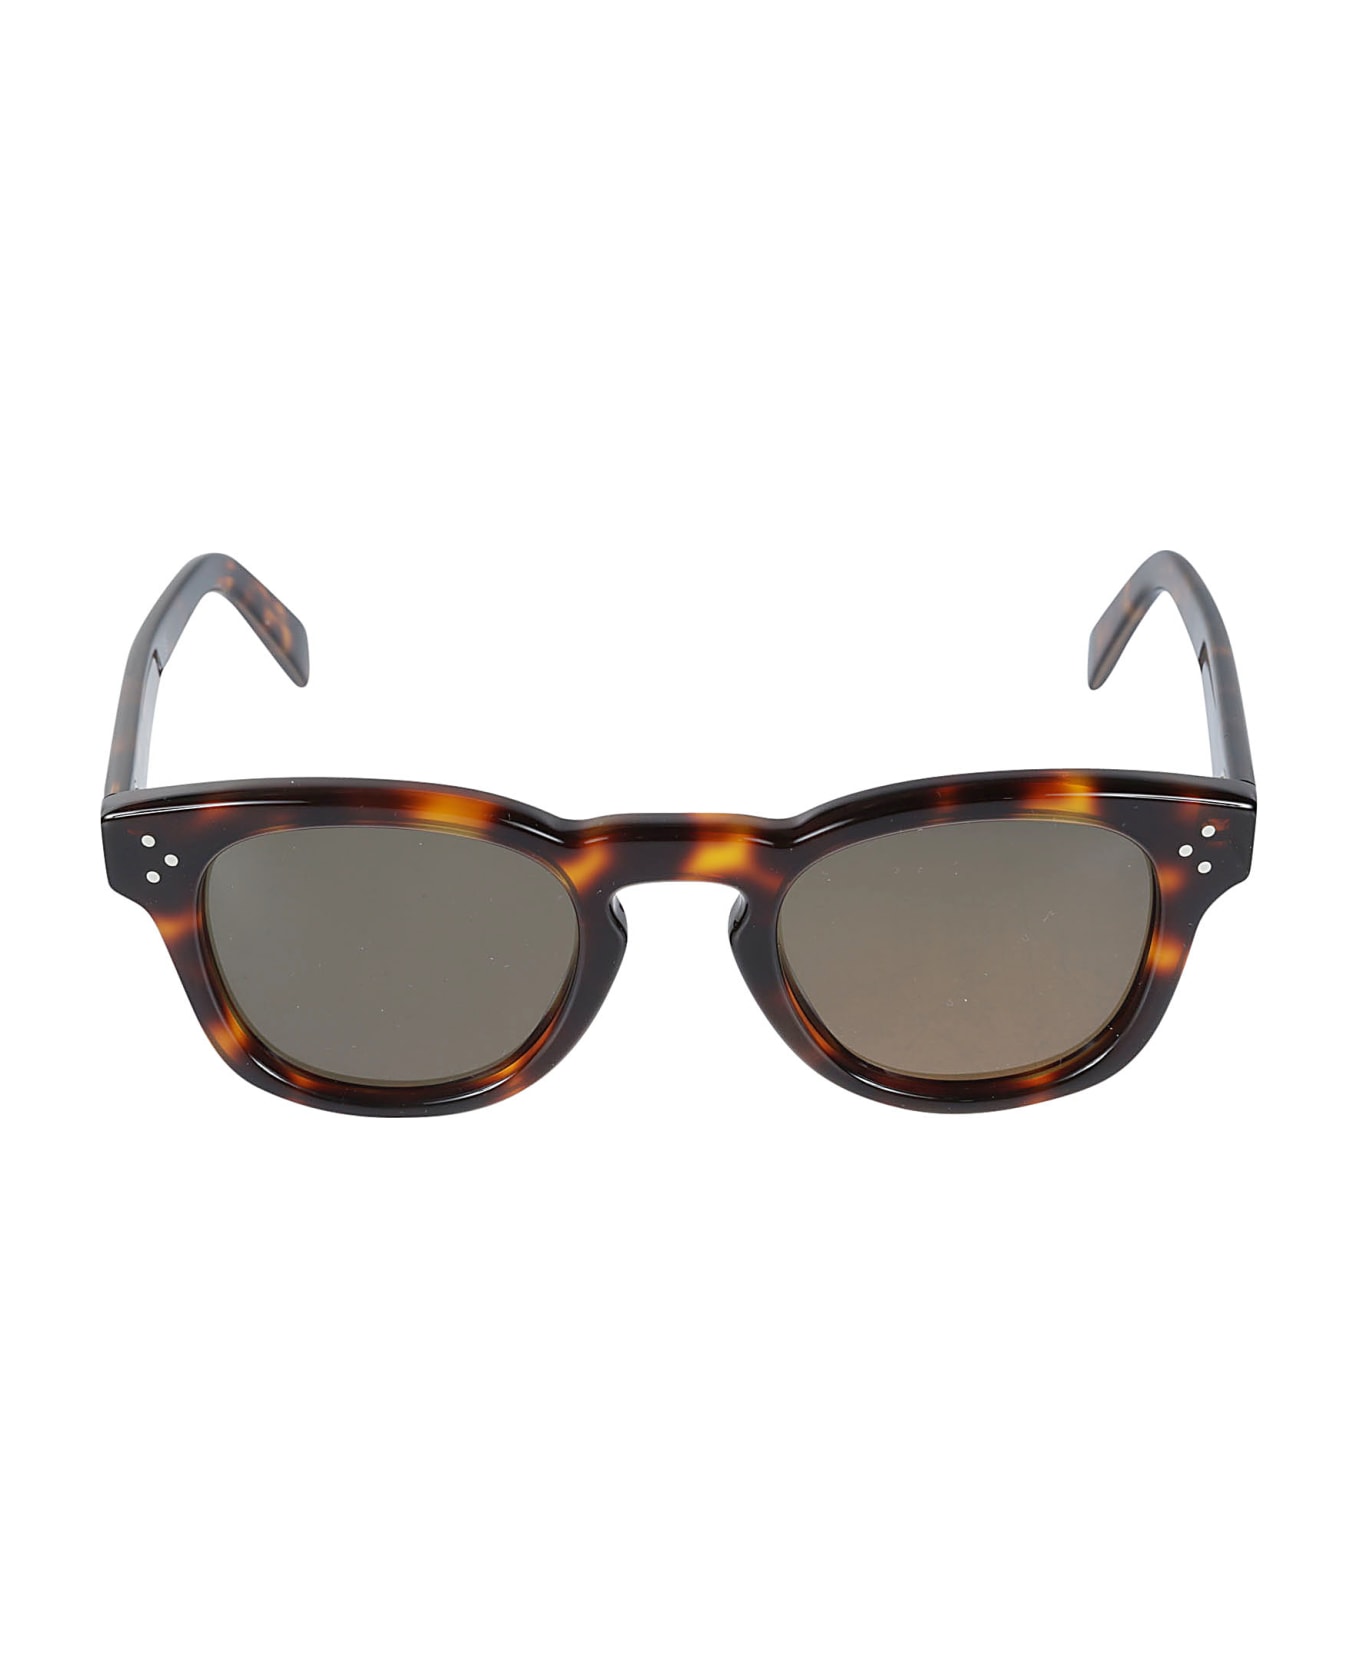 Celine Cat-eye Square Sunglasses - 53n サングラス